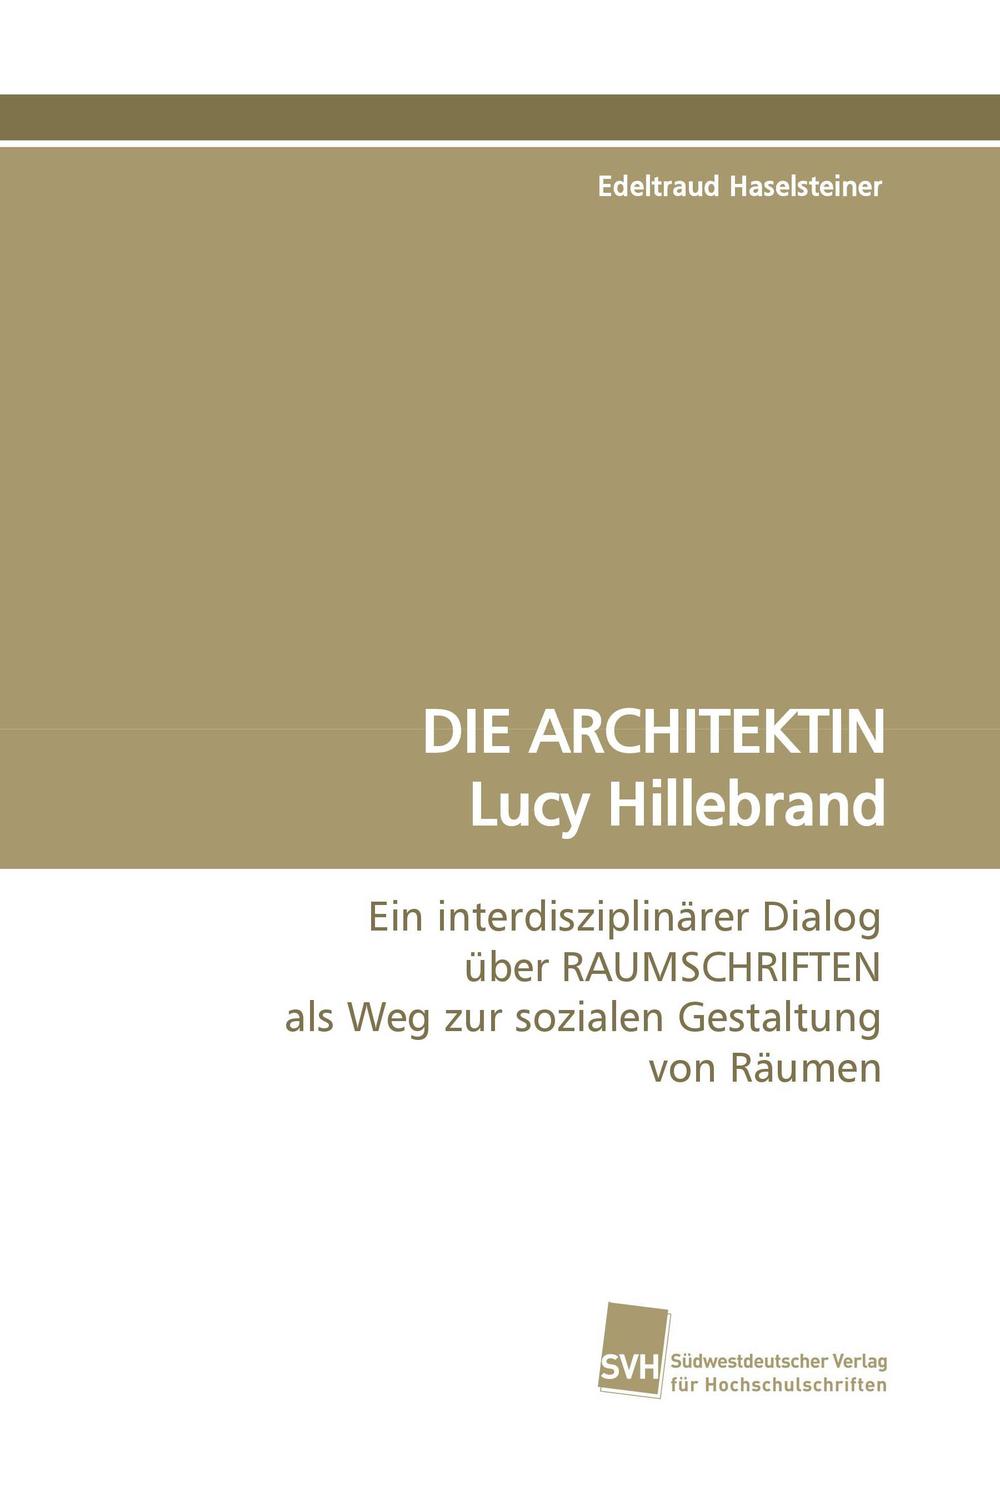 DIE ARCHITEKTIN Lucy Hillebrand - Edeltraud Haselsteiner